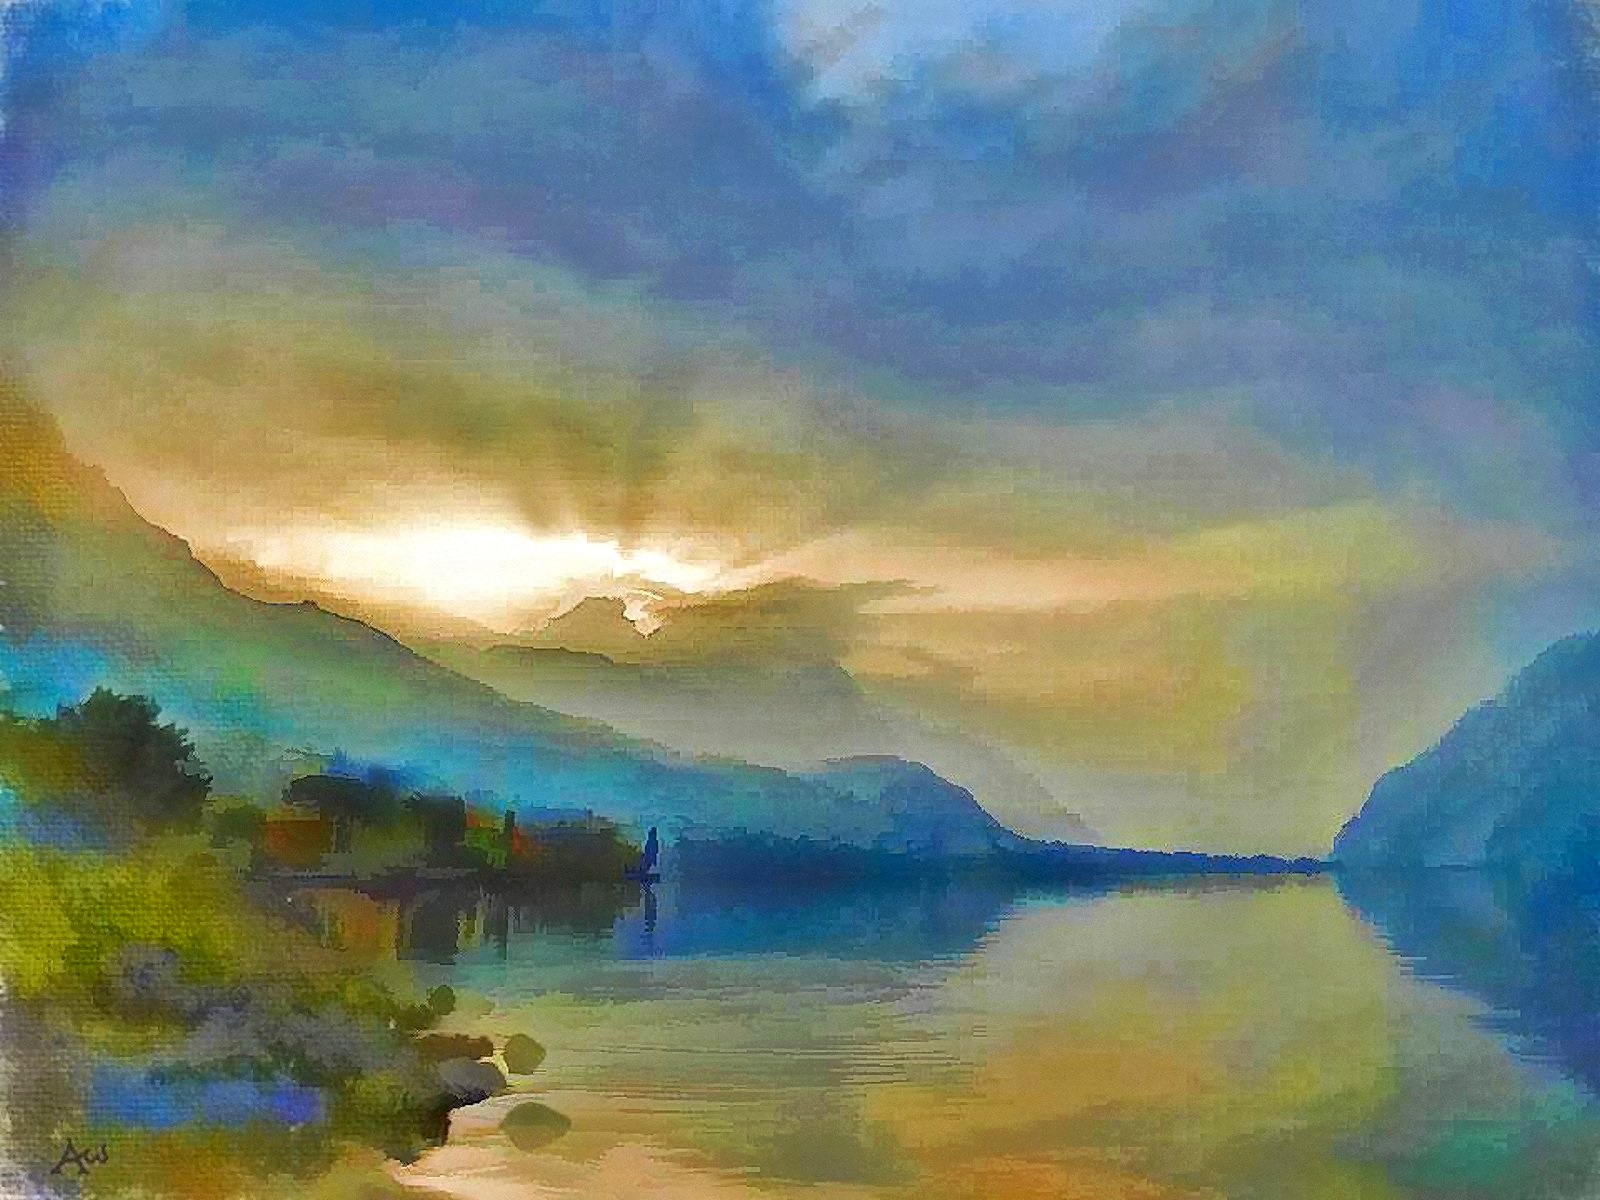 00 Andreas Walsh. Daybreak at Lake Ticonderoga. 2015